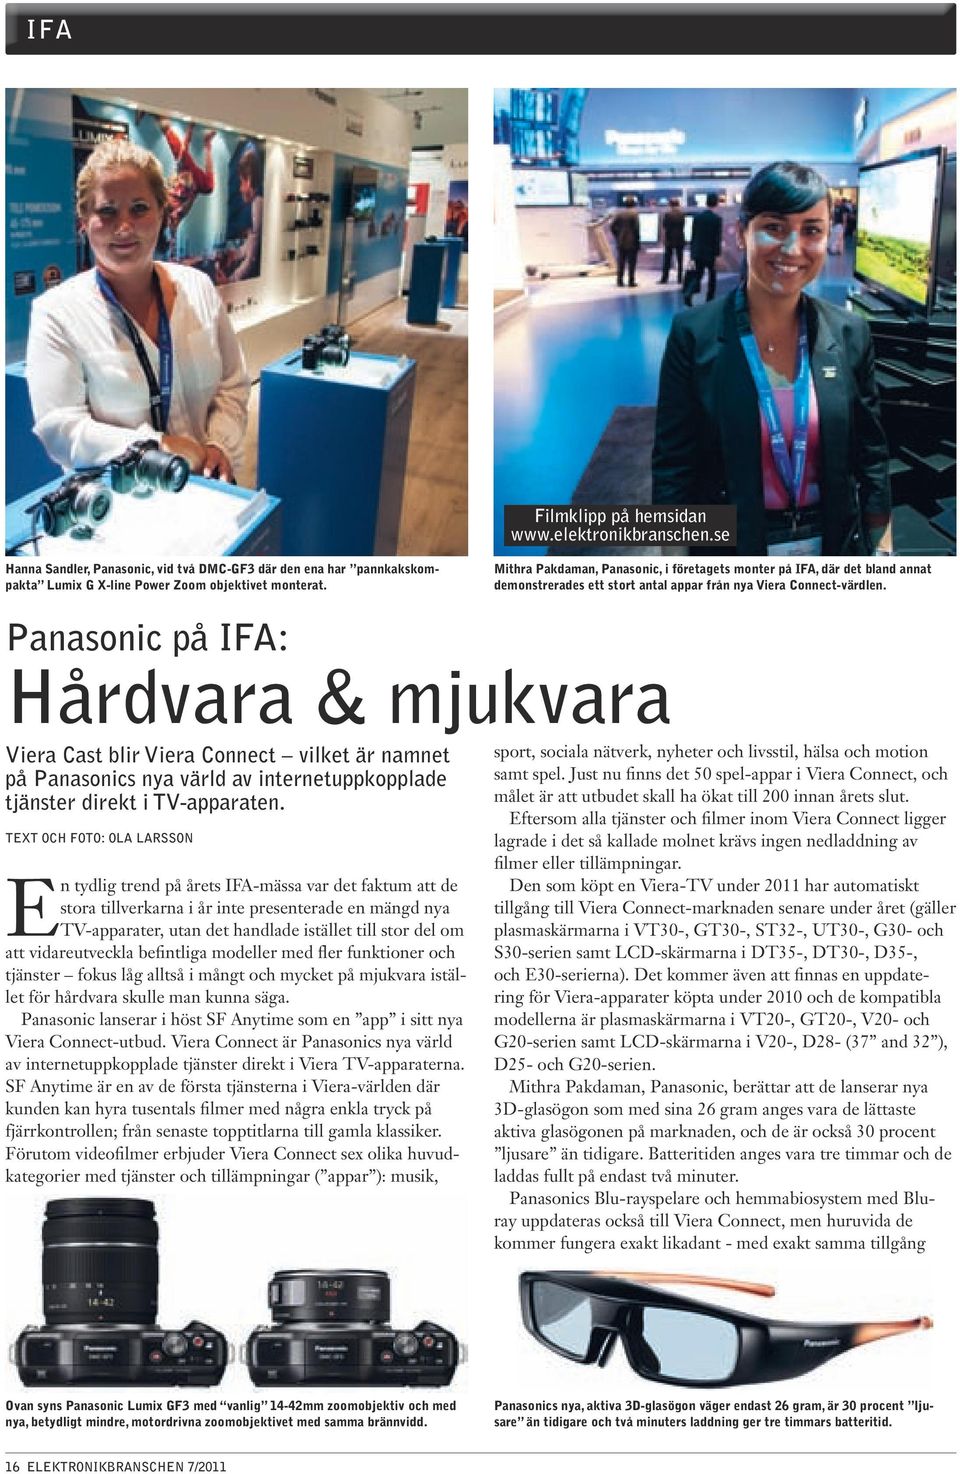 Panasonic på IFA: Hårdvara & mjukvara Viera Cast blir Viera Connect vilket är namnet på Panasonics nya värld av internetuppkopplade tjänster direkt i TV-apparaten.